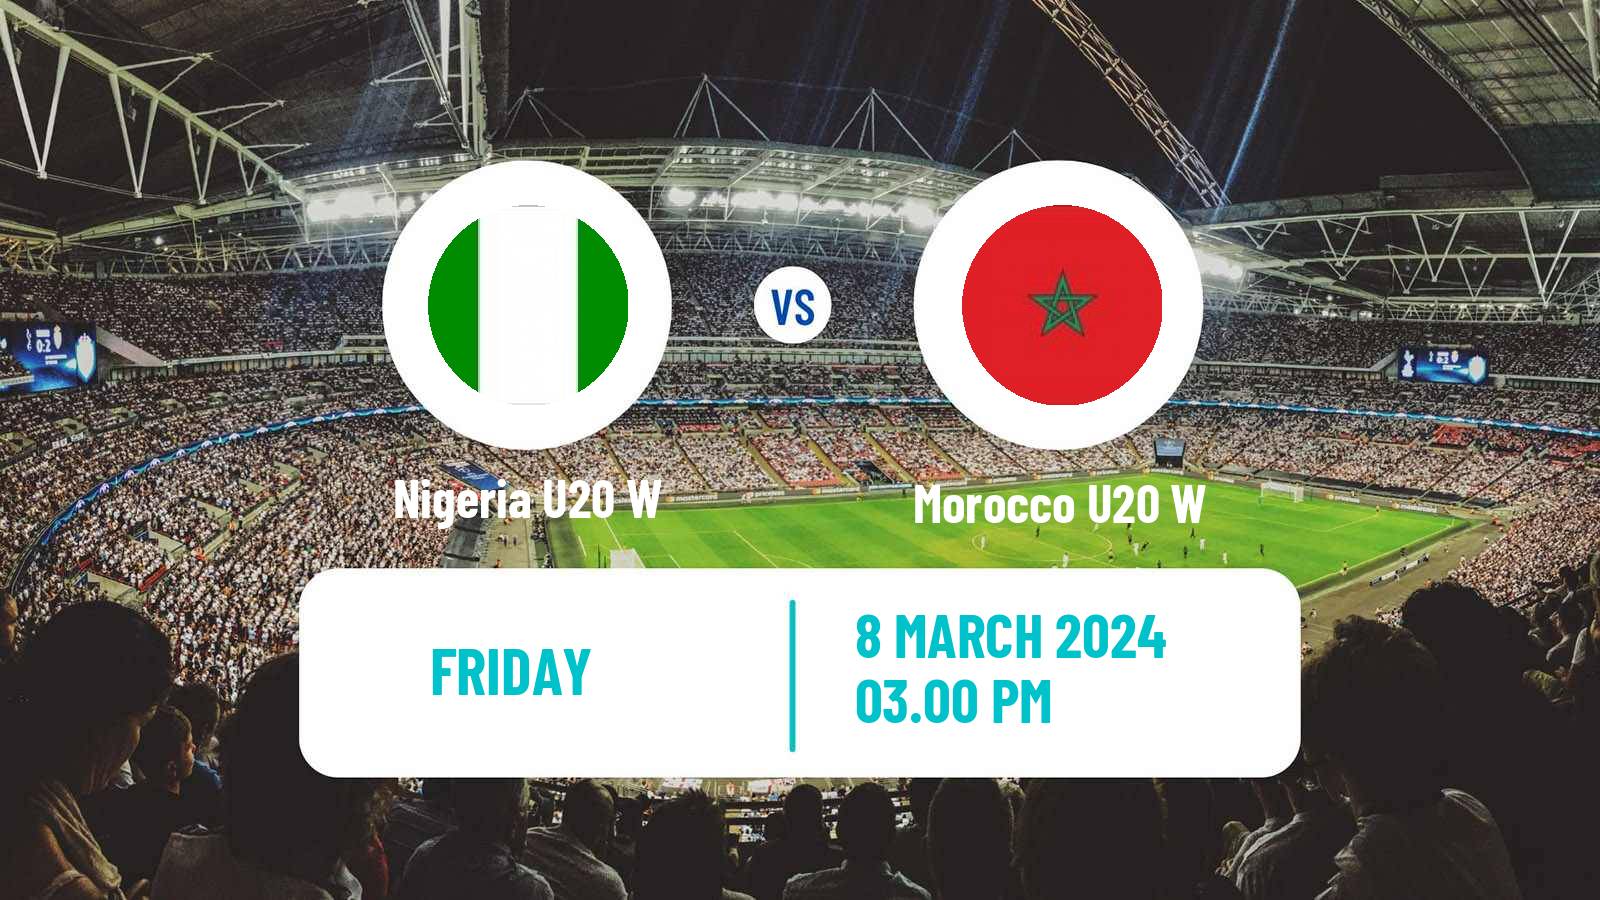 Soccer African Games Football Women Nigeria U20 W - Morocco U20 W